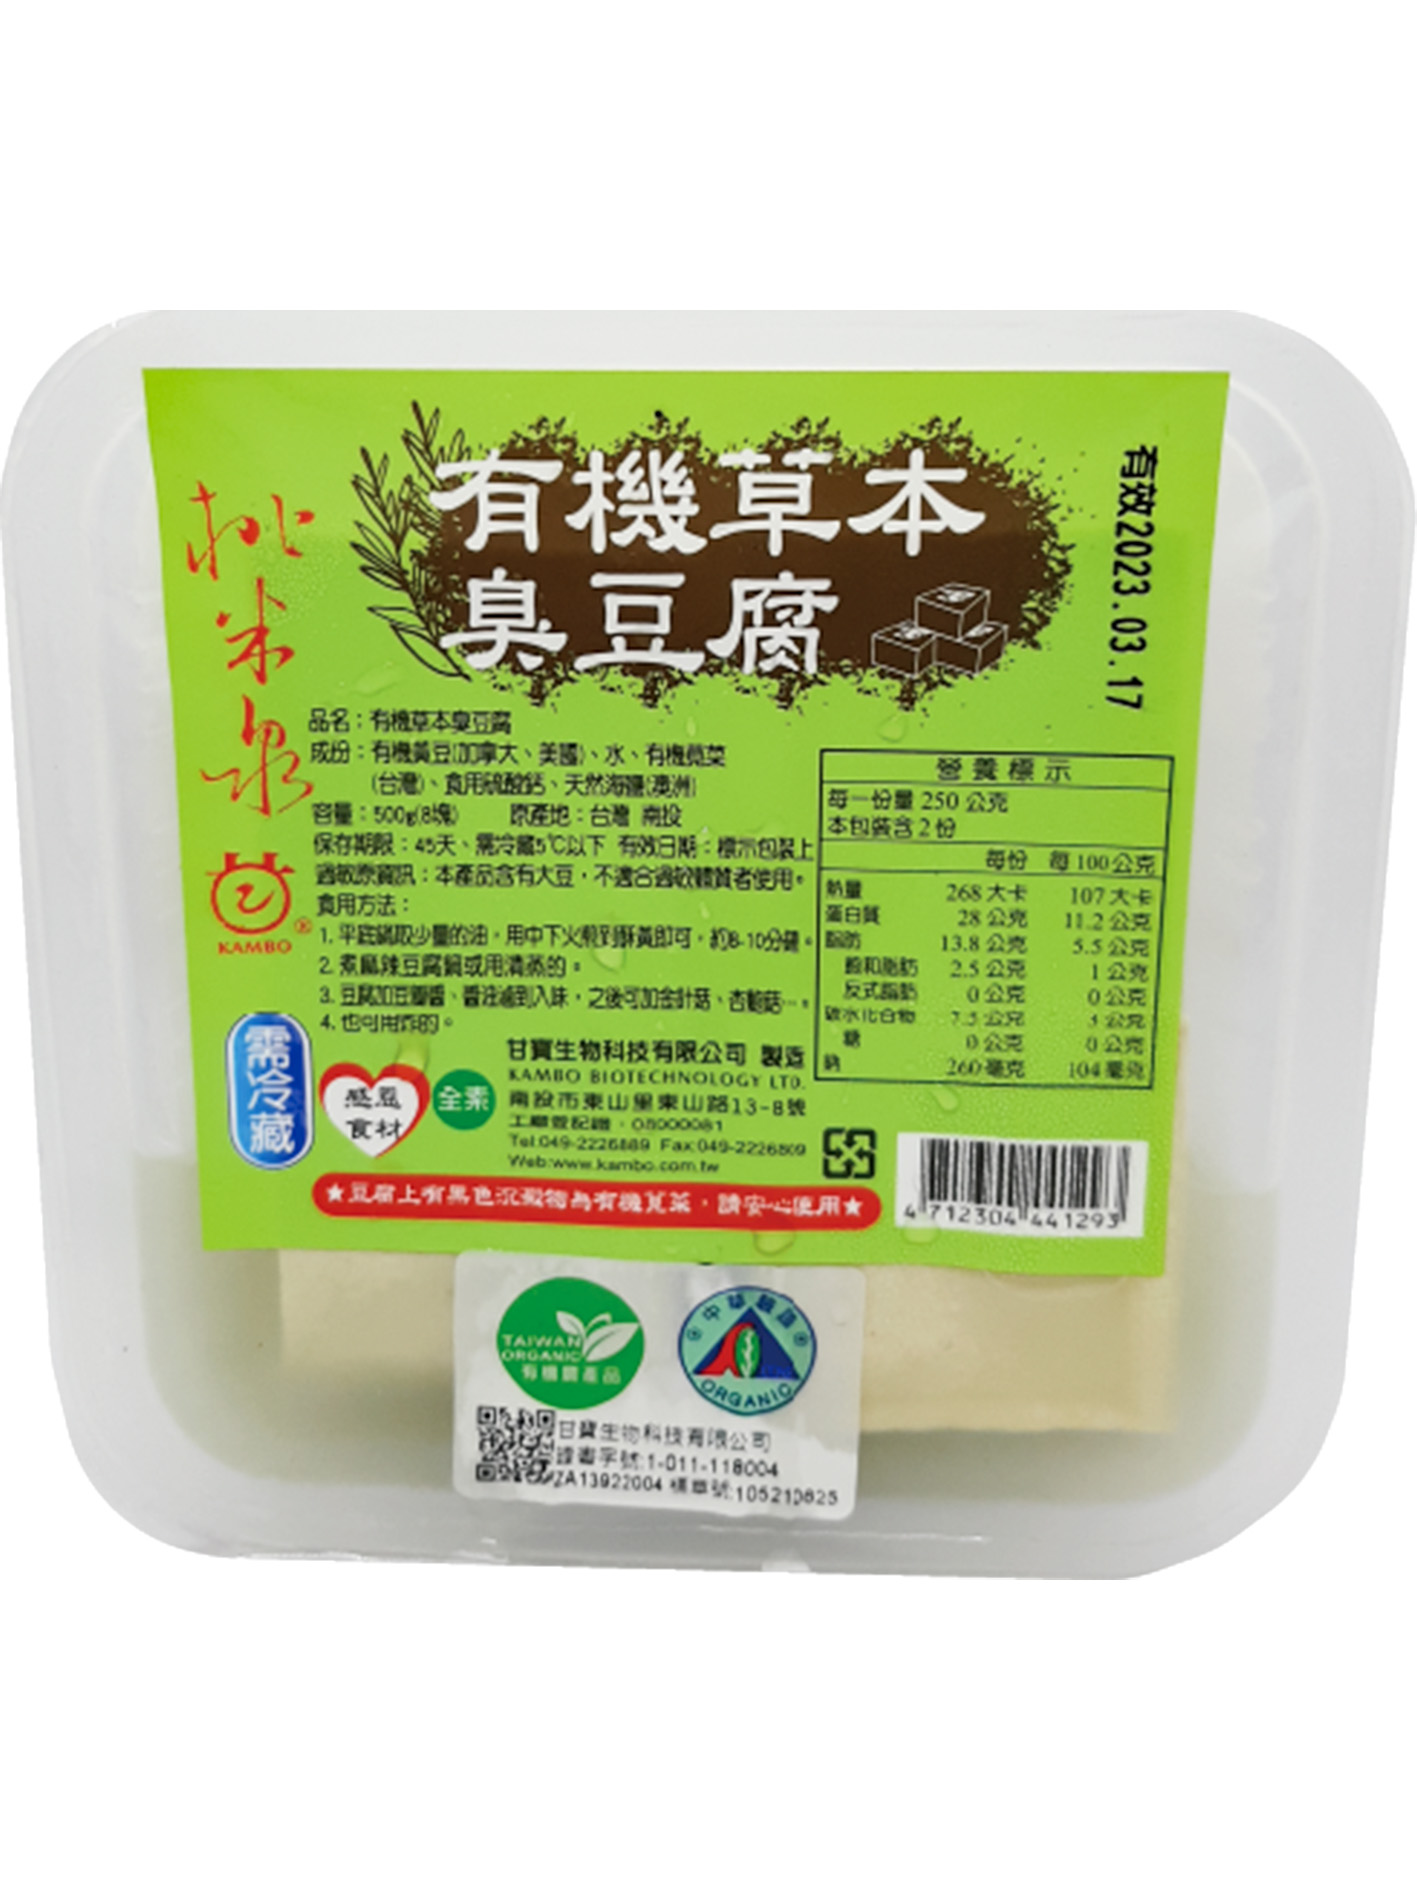 有機草本臭豆腐(8塊)